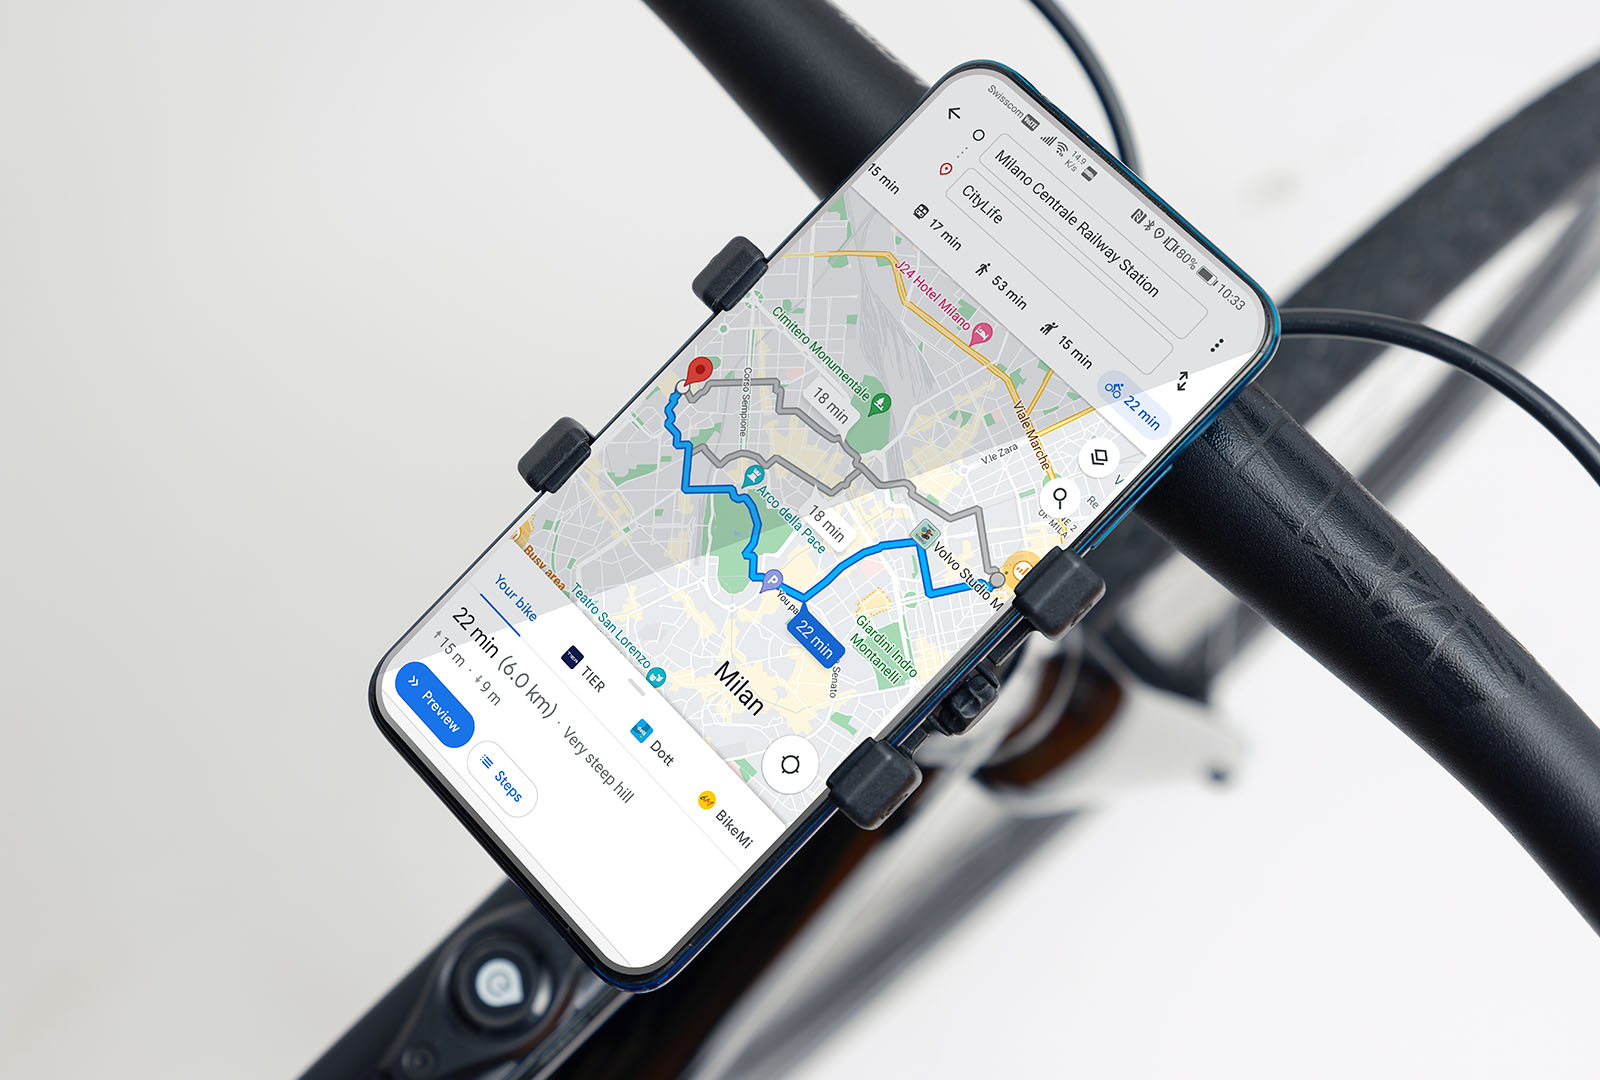 E-bike googlemaps